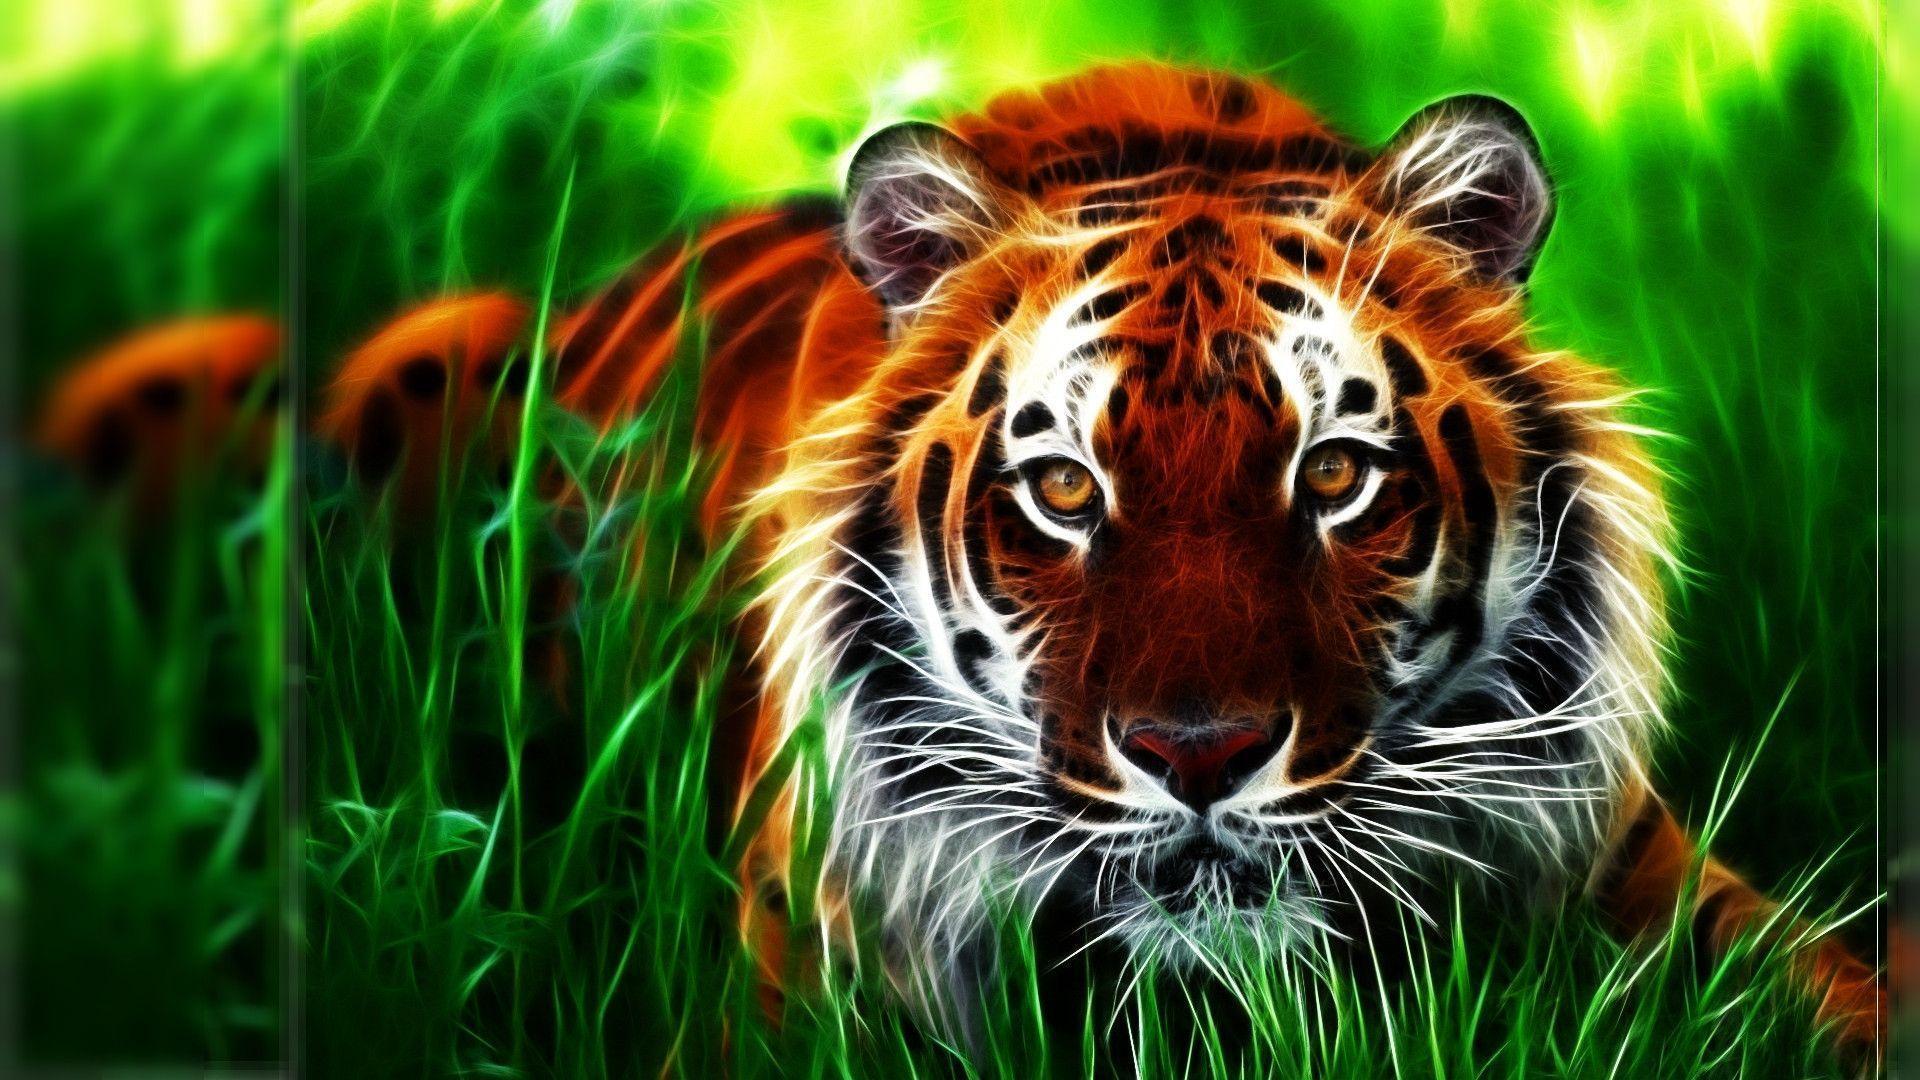 3D Lion Art HD Wallpaper. Download High Quality Resolution Wallpaper